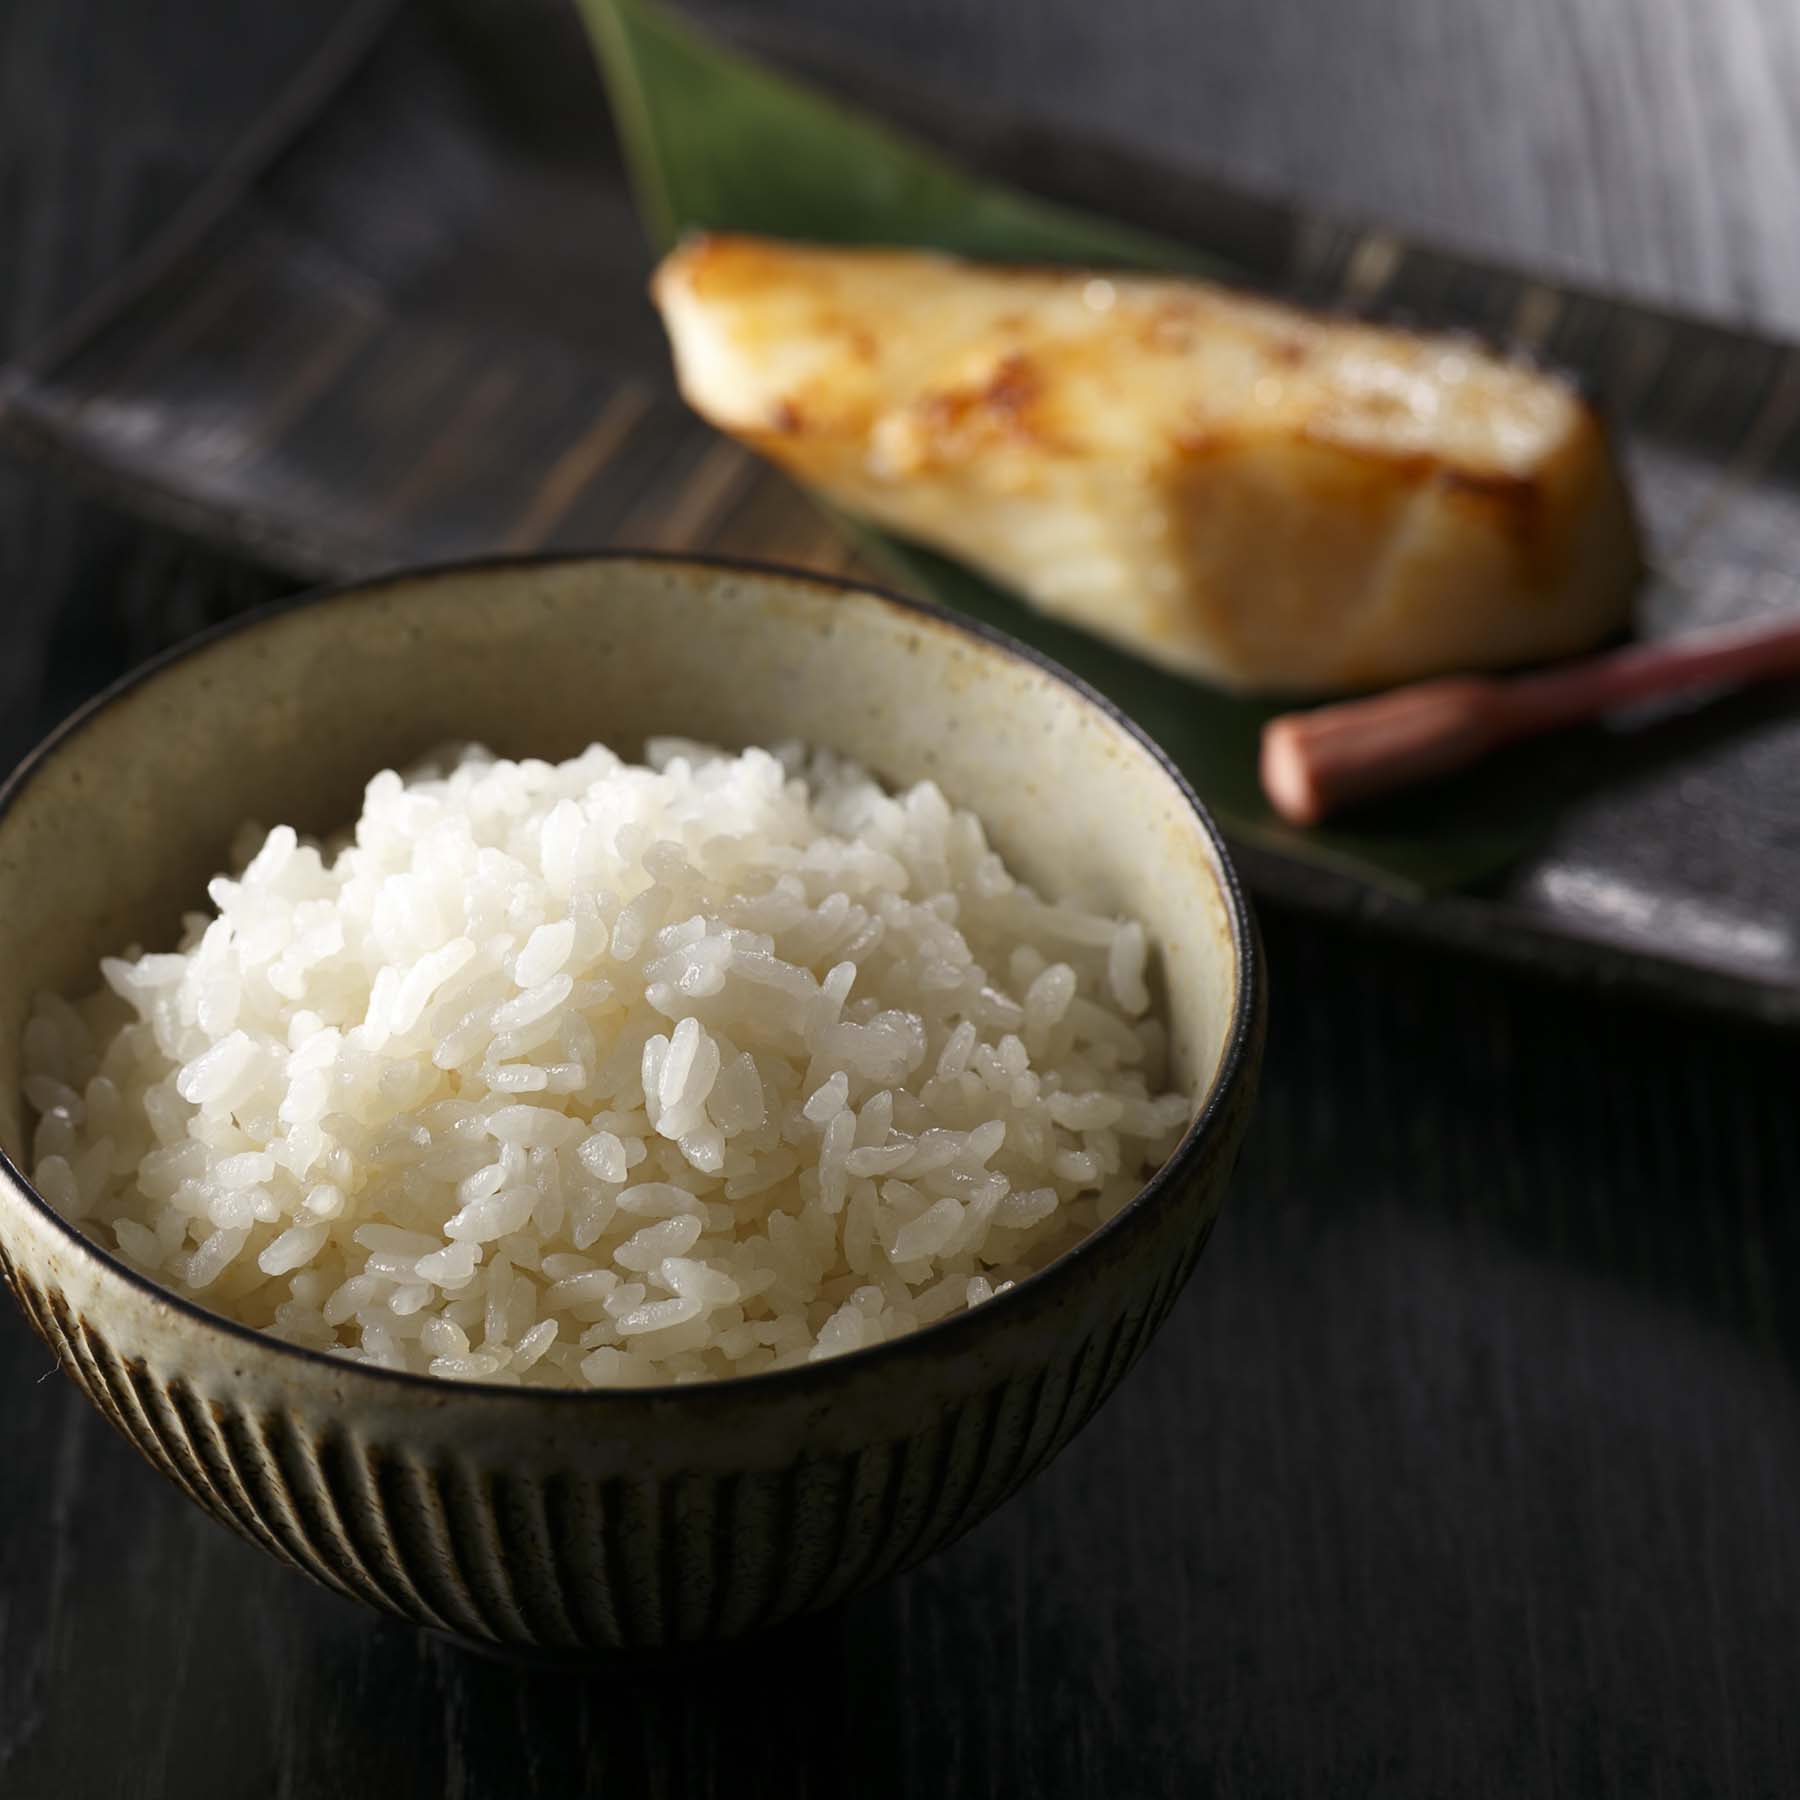 特別栽培米新潟産コシヒカリ5kg 定期便12回